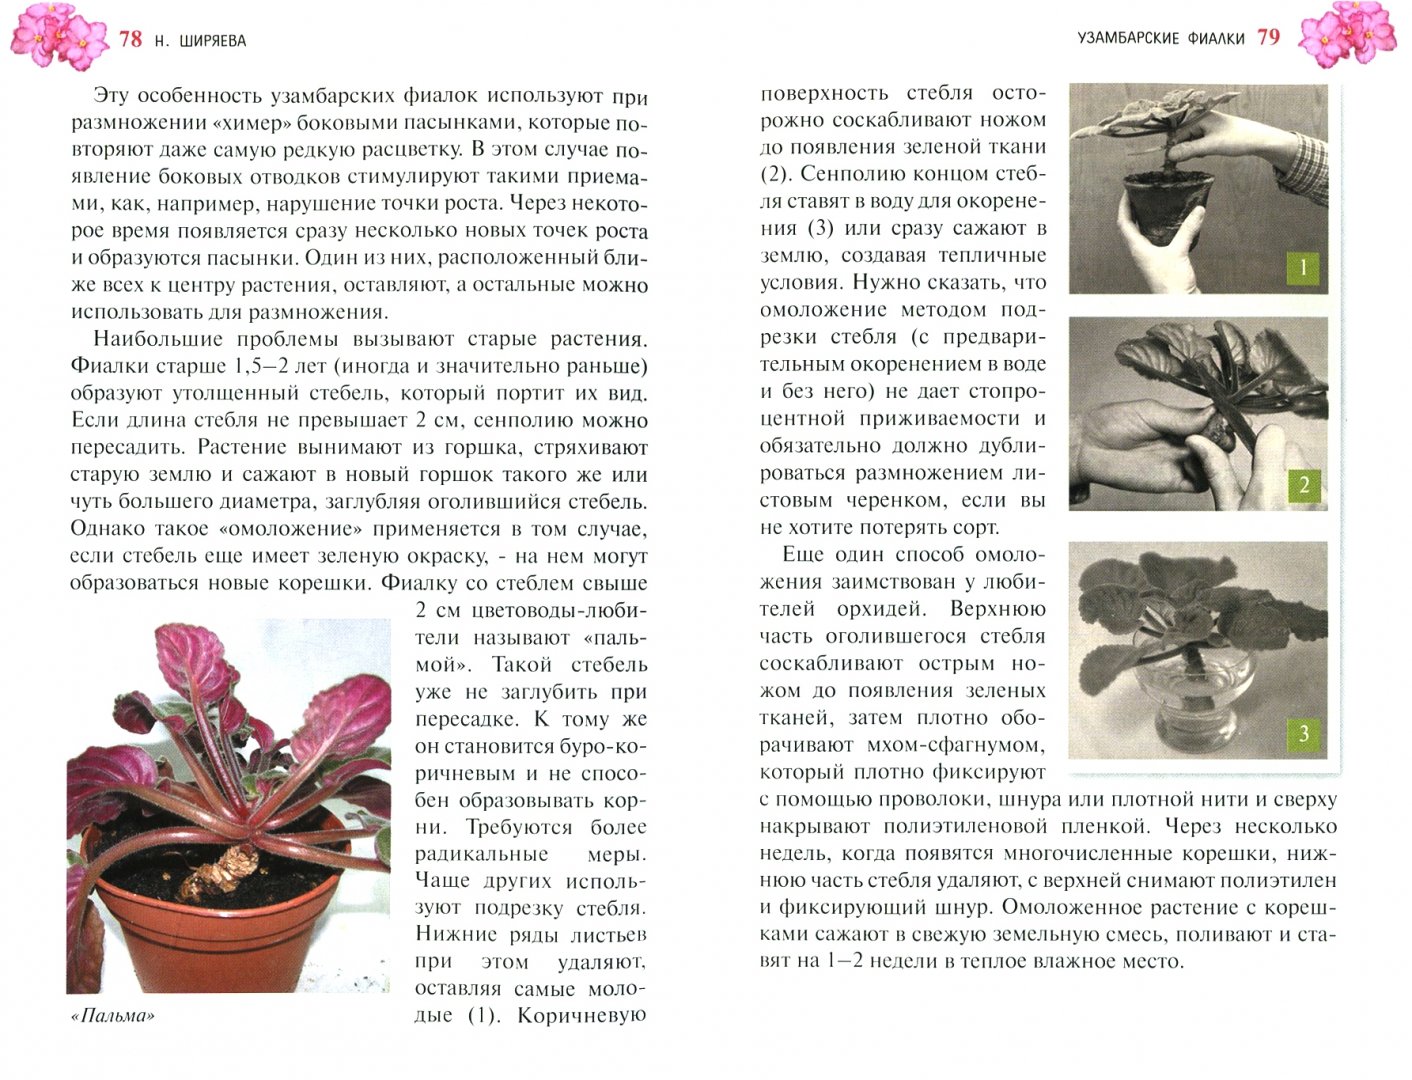 Иллюстрация 1 из 5 для Узамбарские фиалки - Надежда Ширяева | Лабиринт - книги. Источник: Лабиринт